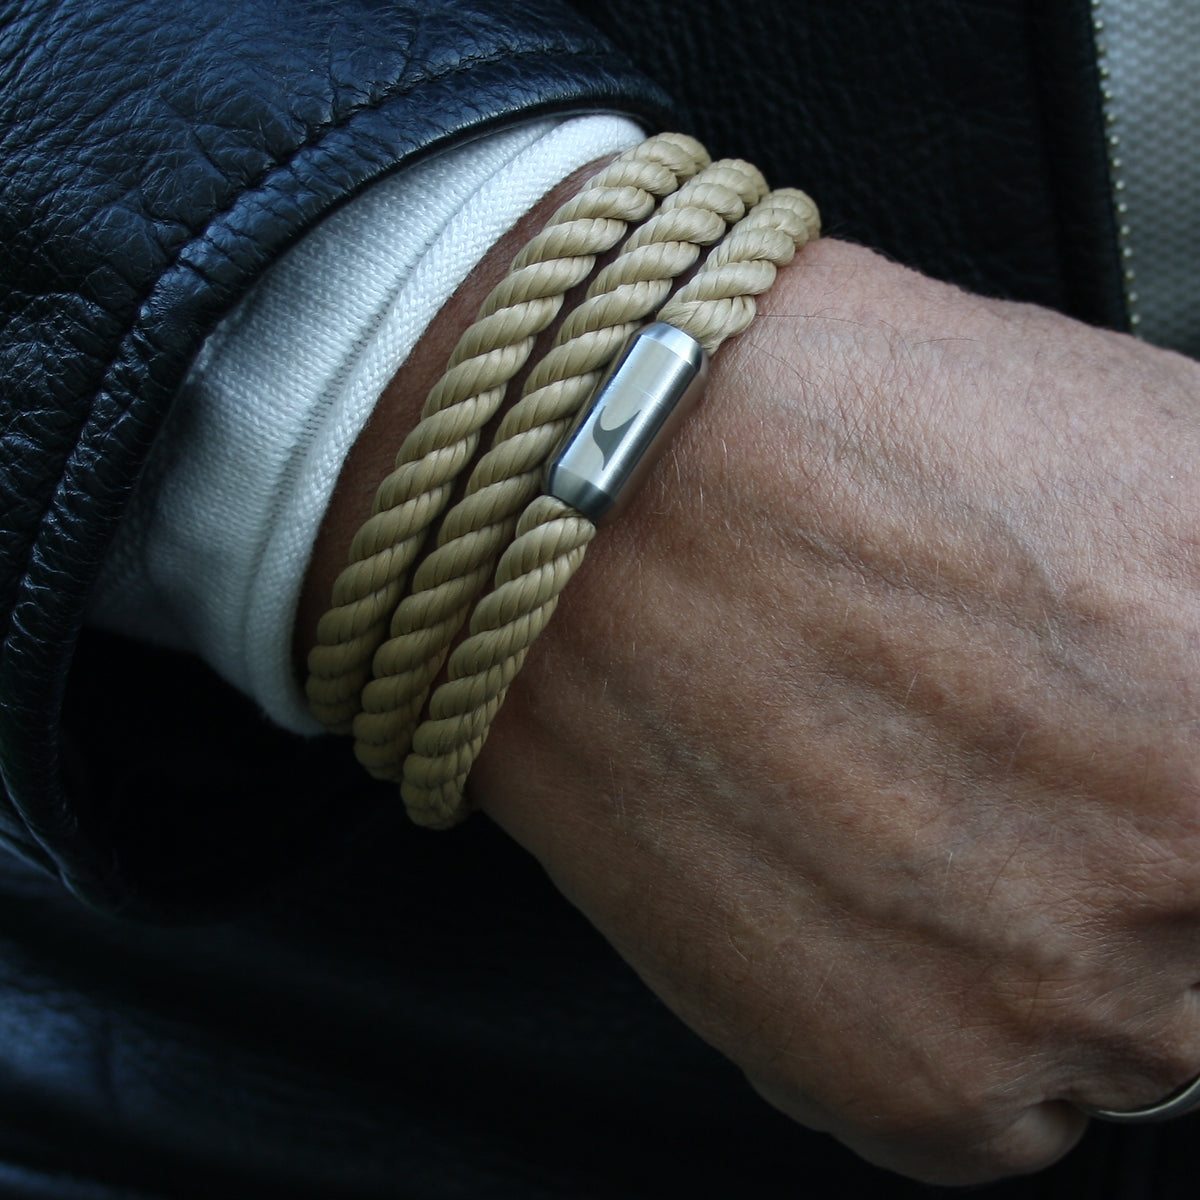 Herren-Segeltau-Armband-Storm-beige-kordel-Edelstahlverschluss-getragen-wavepirate-shop-k